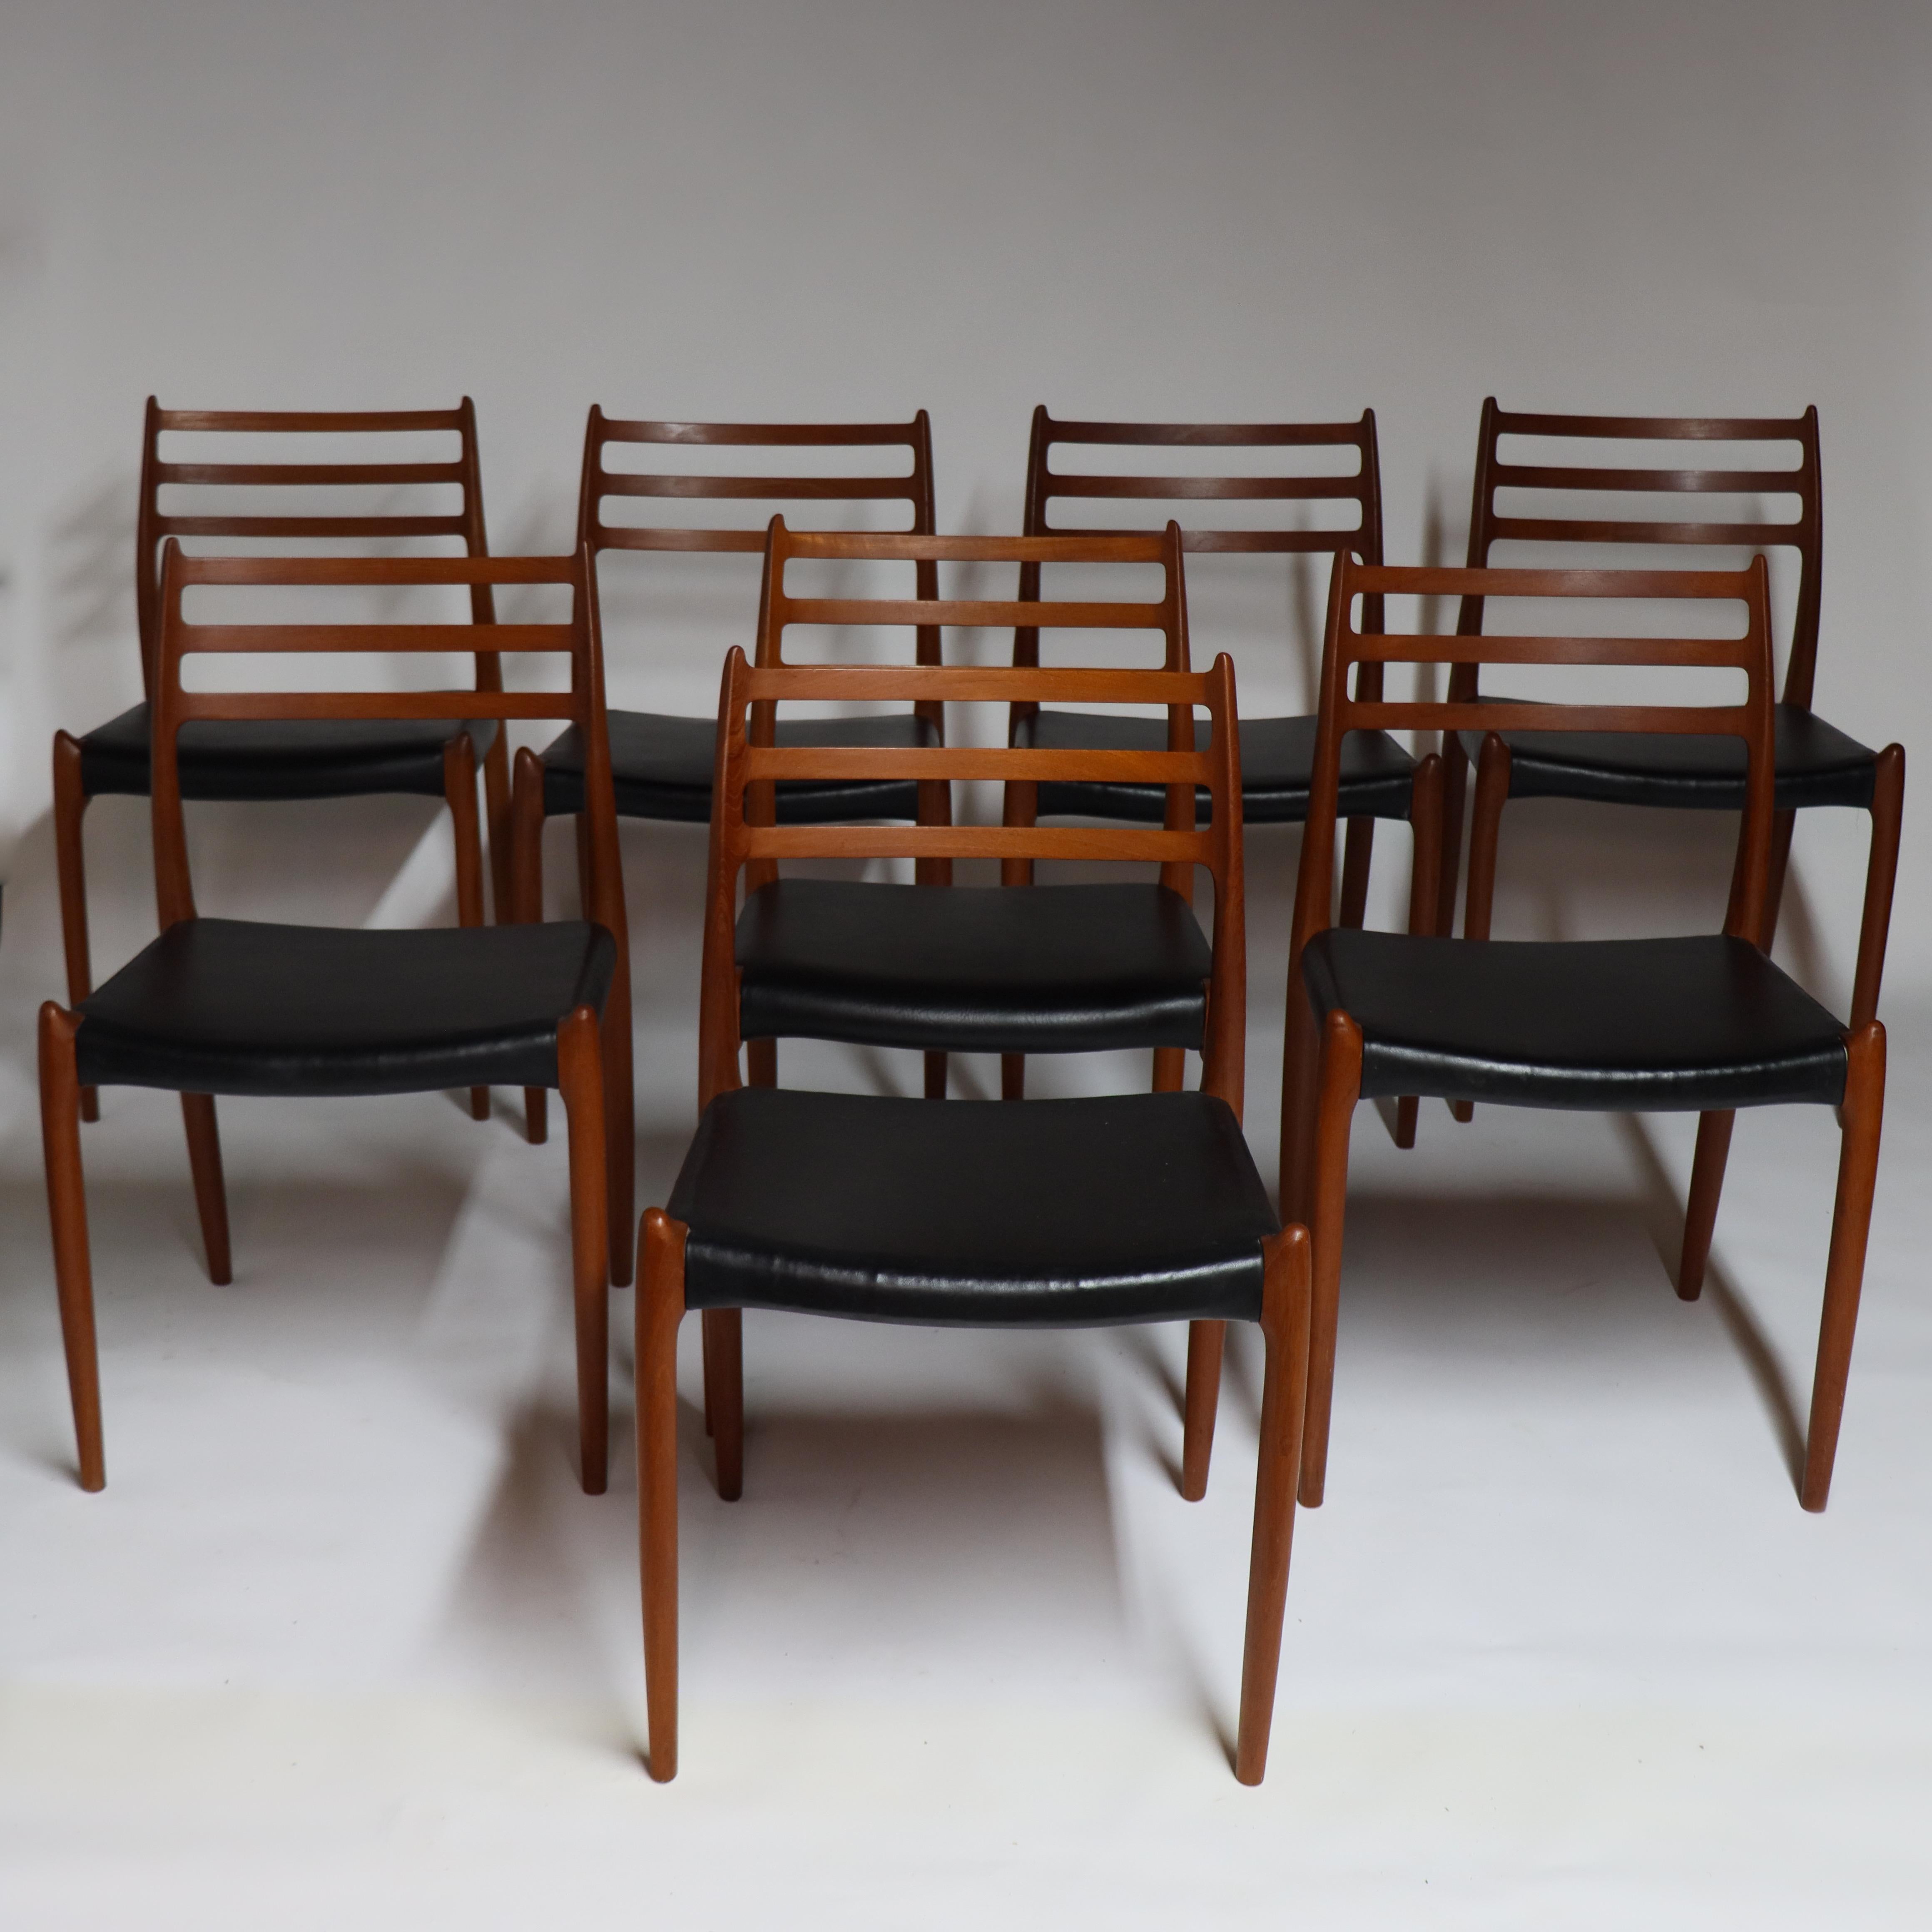 Hübsches Set aus 8 Esszimmerstühlen, entworfen von Neils O. Møller für J.L. Møller, Dänemark - 1962 (Modell 78)

Diese schönen Exemplare sind aus altem Teakholz gefertigt und haben eine wunderschöne Färbung. Das Modell 78 ist Møllers ikonischster